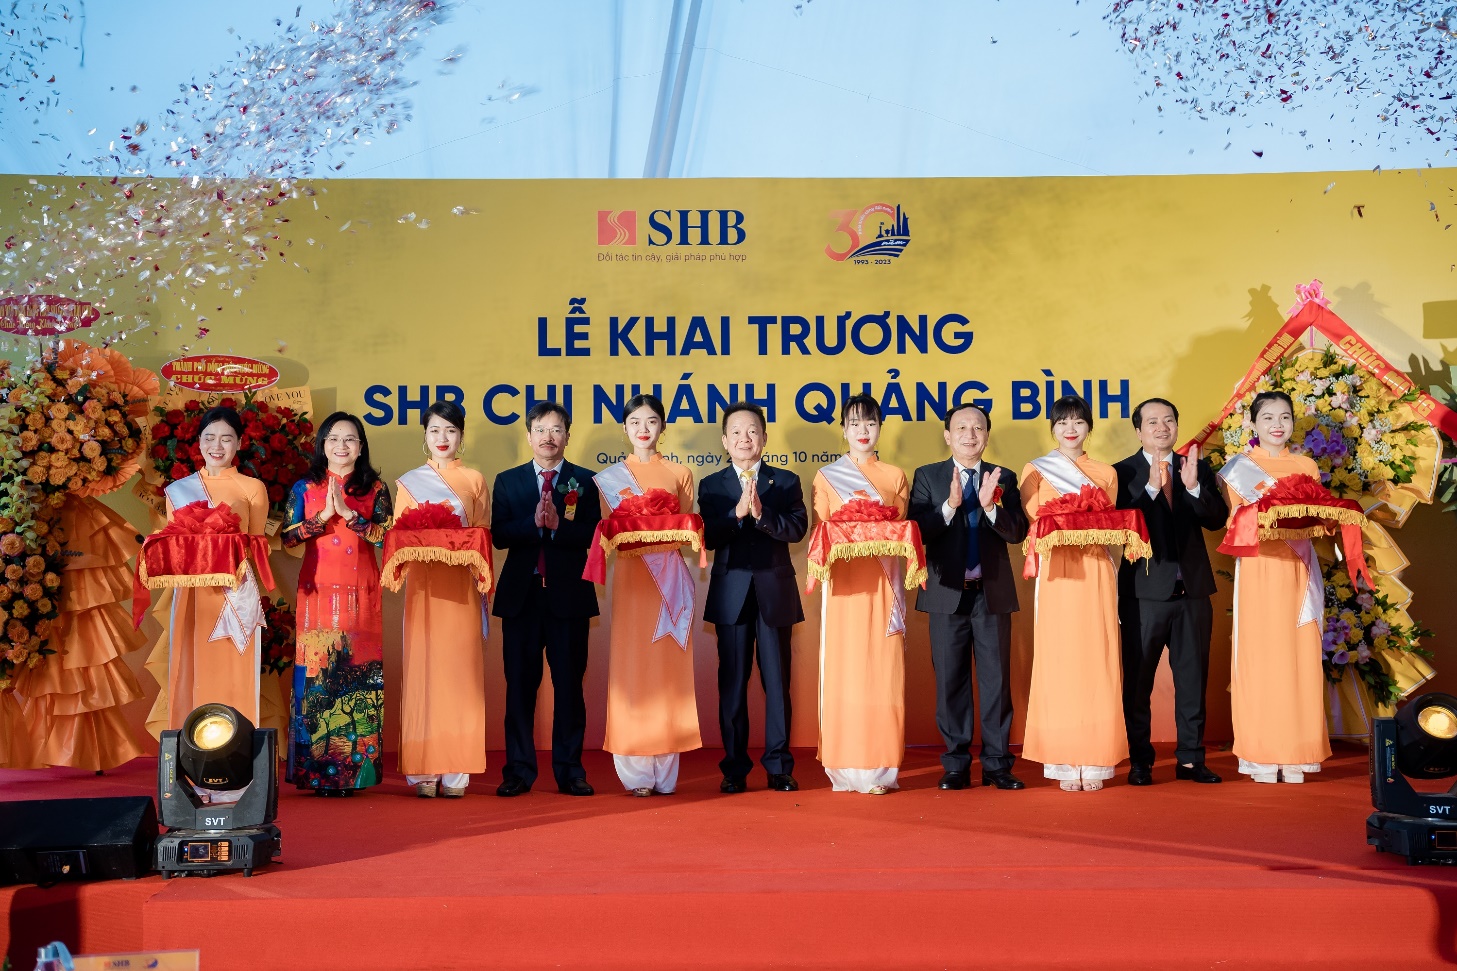 Tăng cường phát triển mạng lưới, SHB khai trương chi nhánh tại Quảng Bình - Ảnh 1.